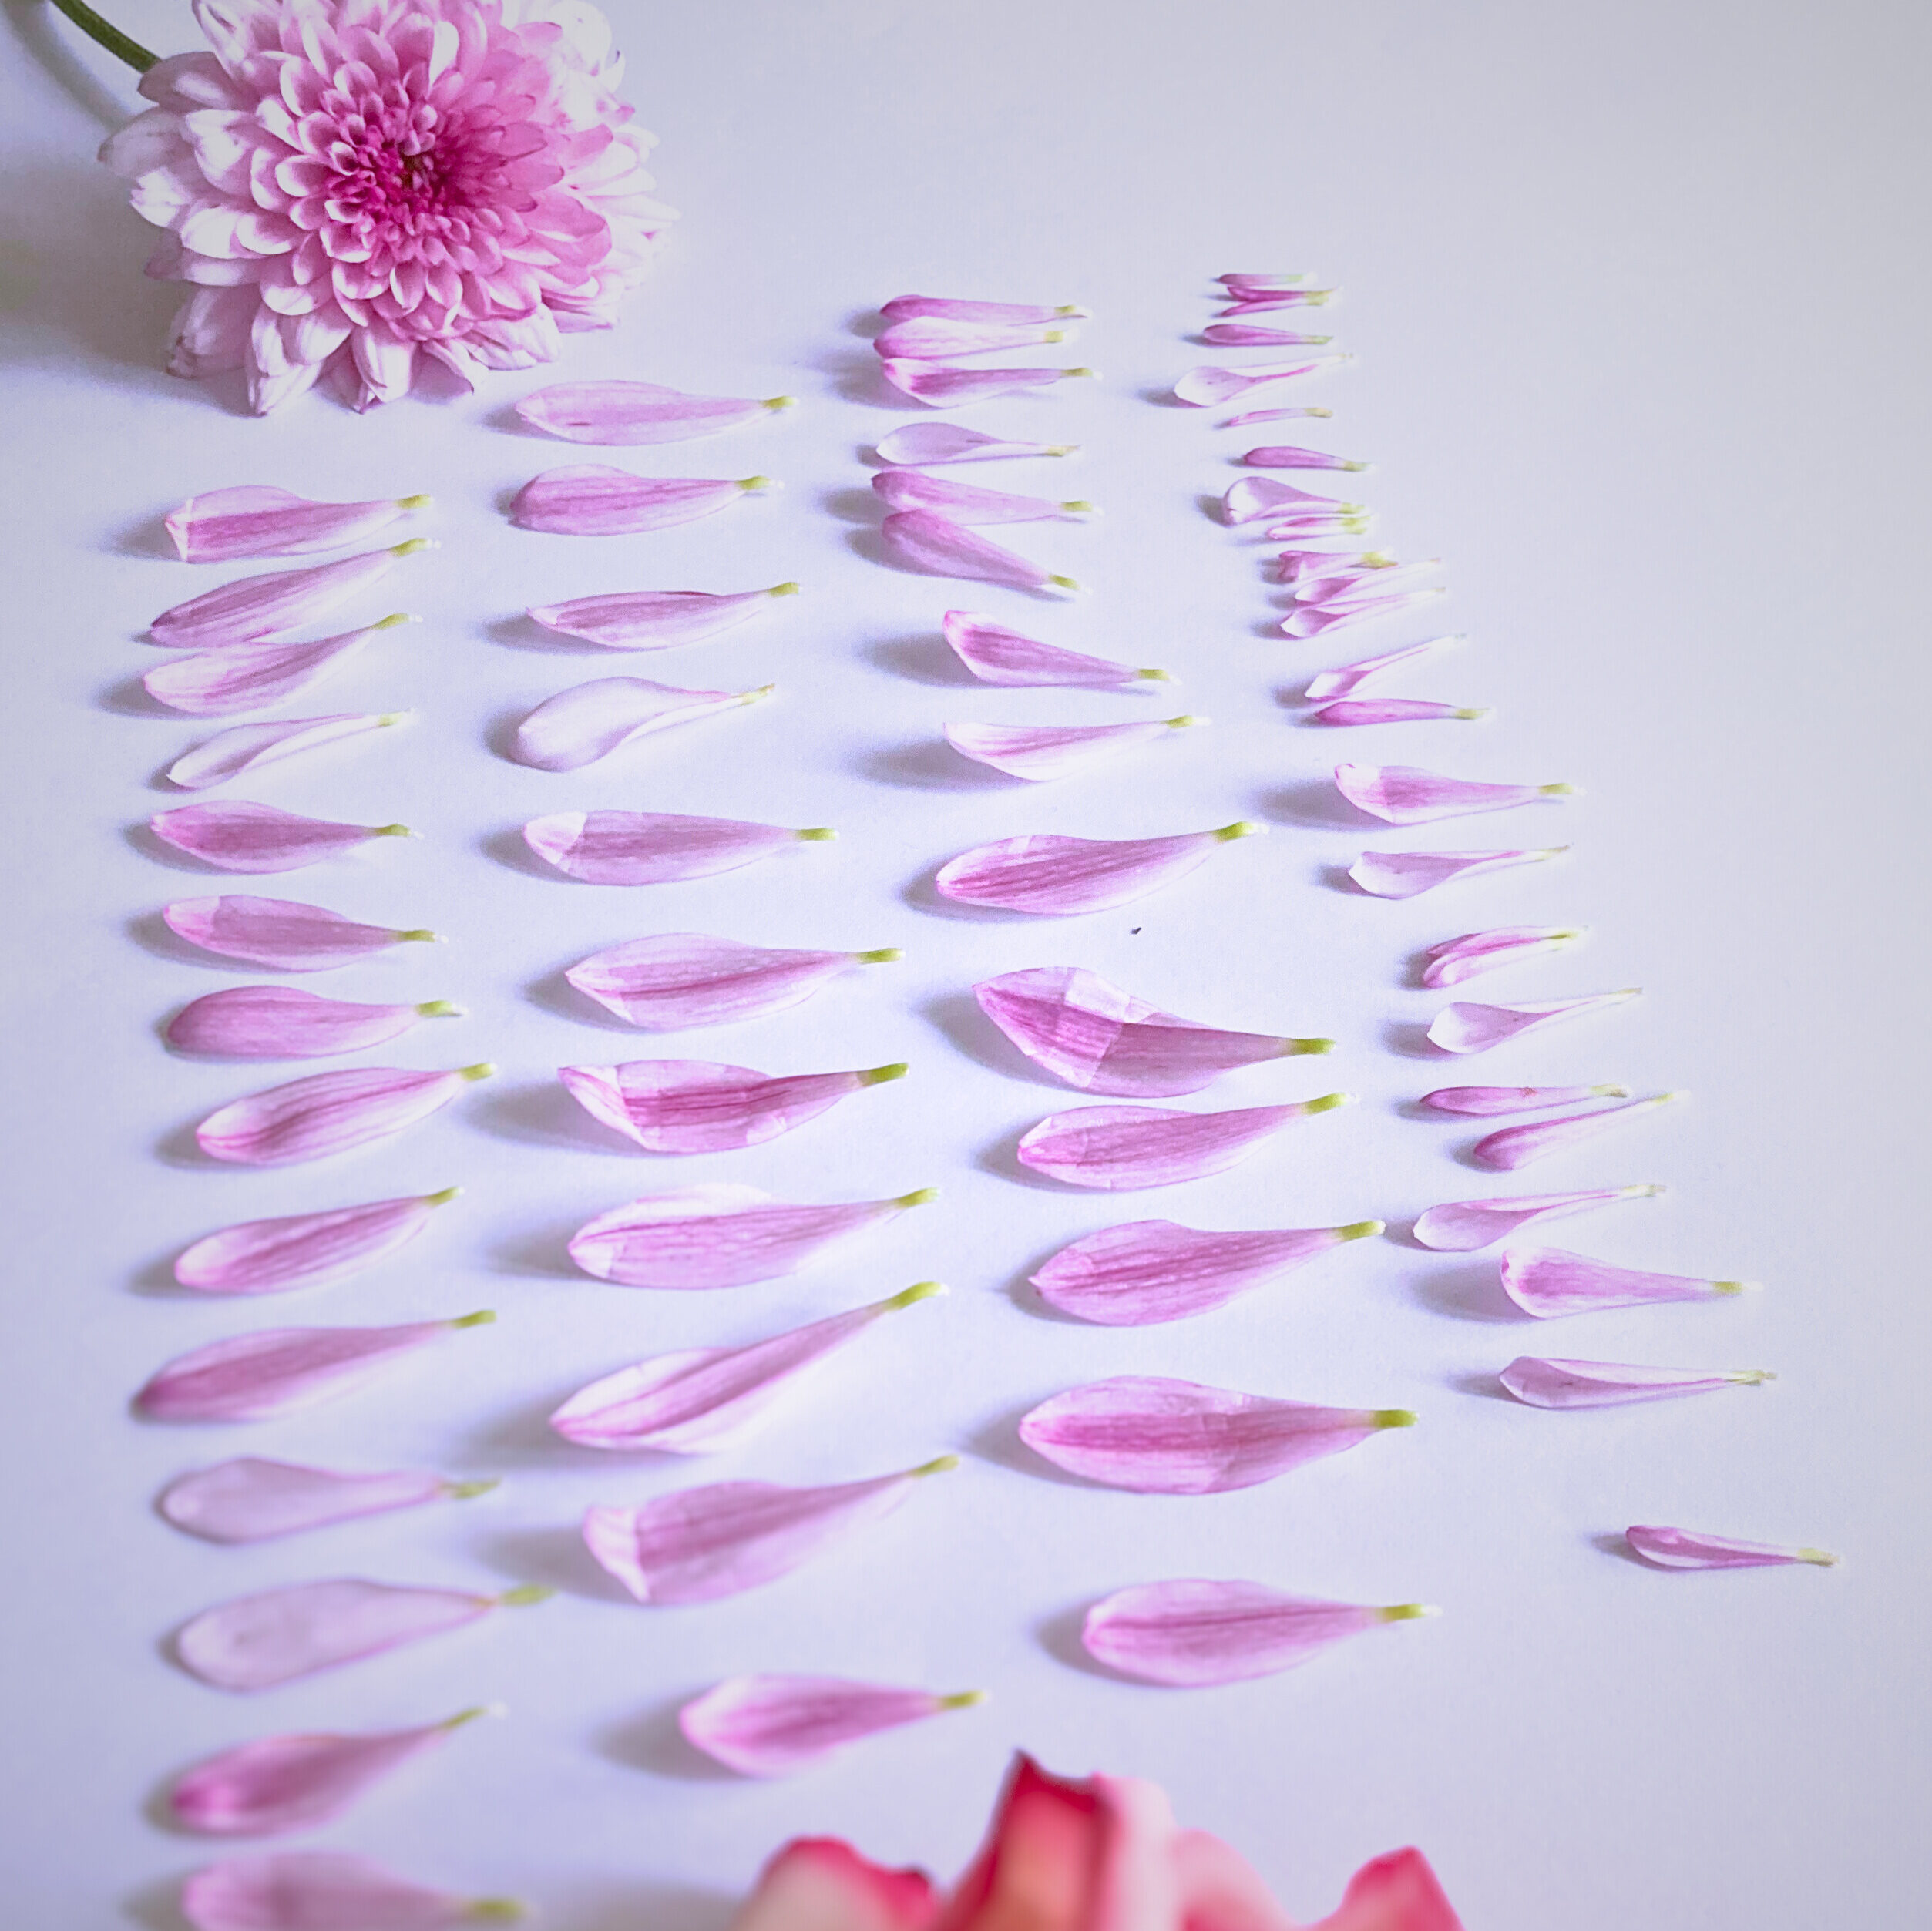 Konservierungsmethoden Brautstrauß
Blumen pressen
Bild aus gepressten Blumen
Blüten einzeln verarbeiten